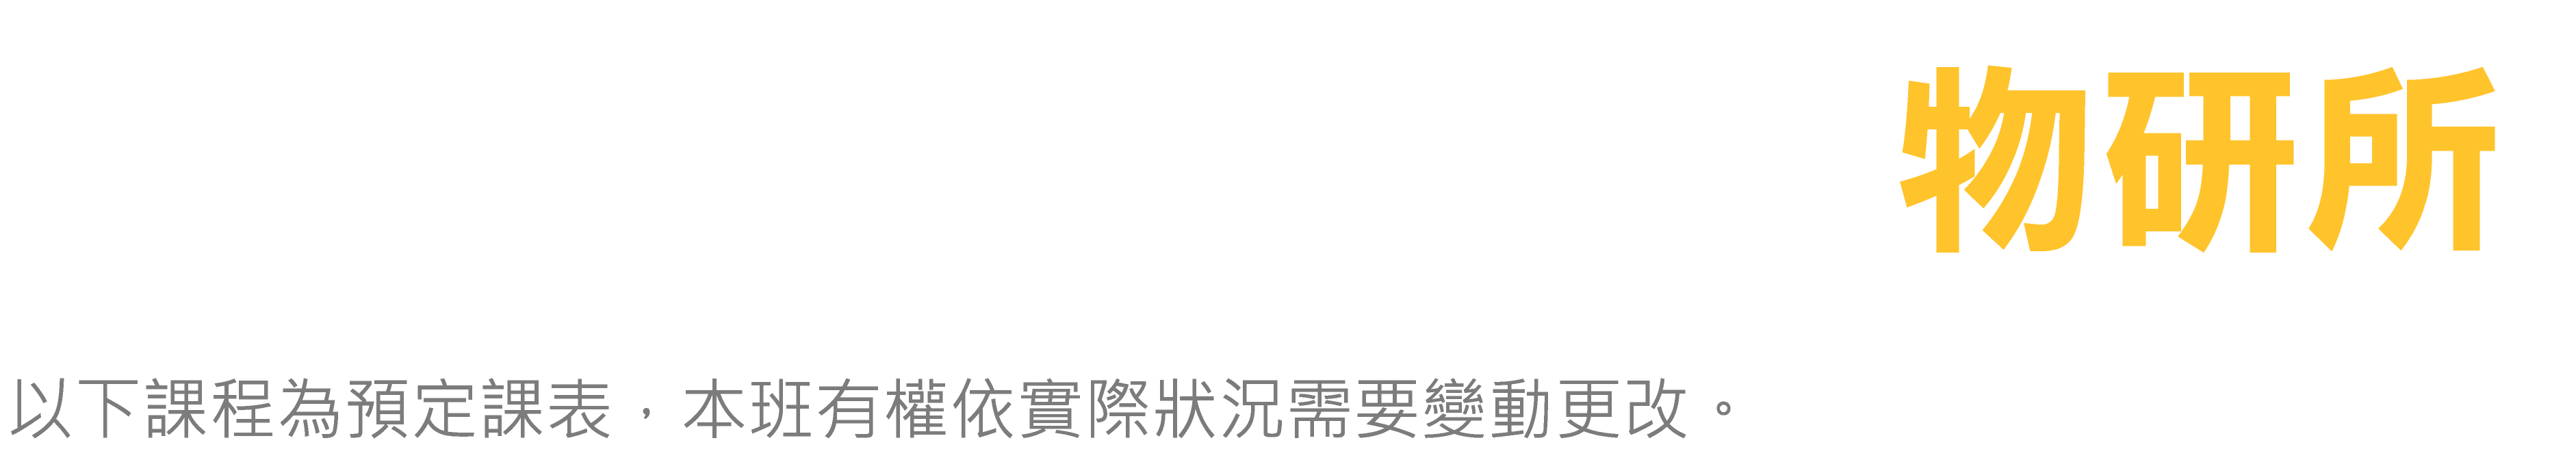 台北偉文 物研所 預定課表